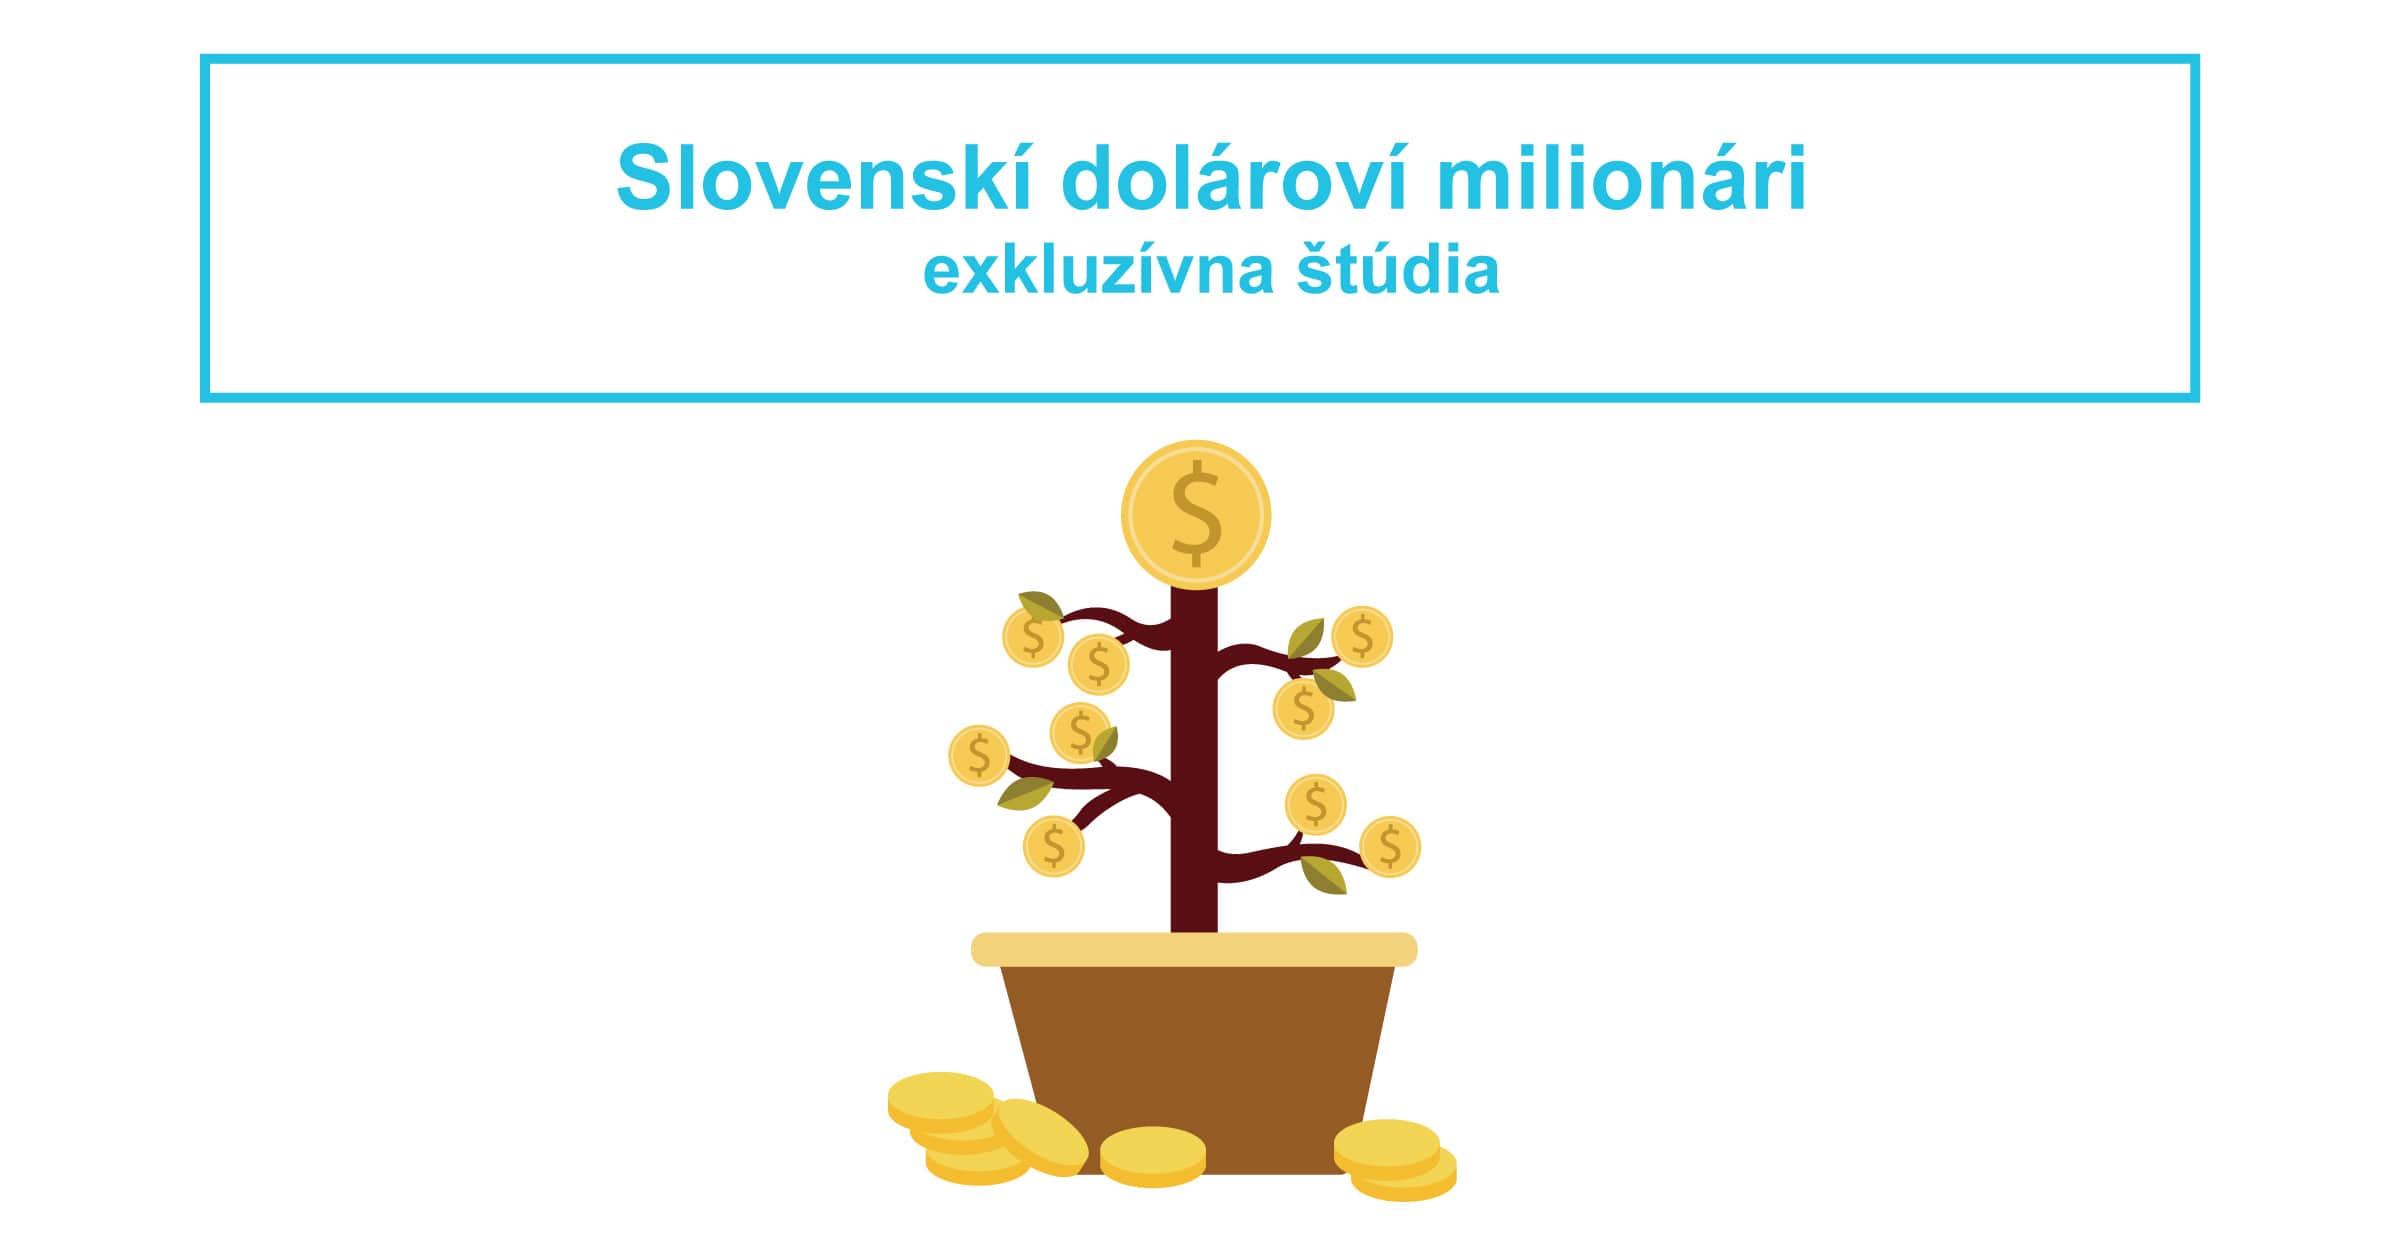 Slovenskí dolároví milionári